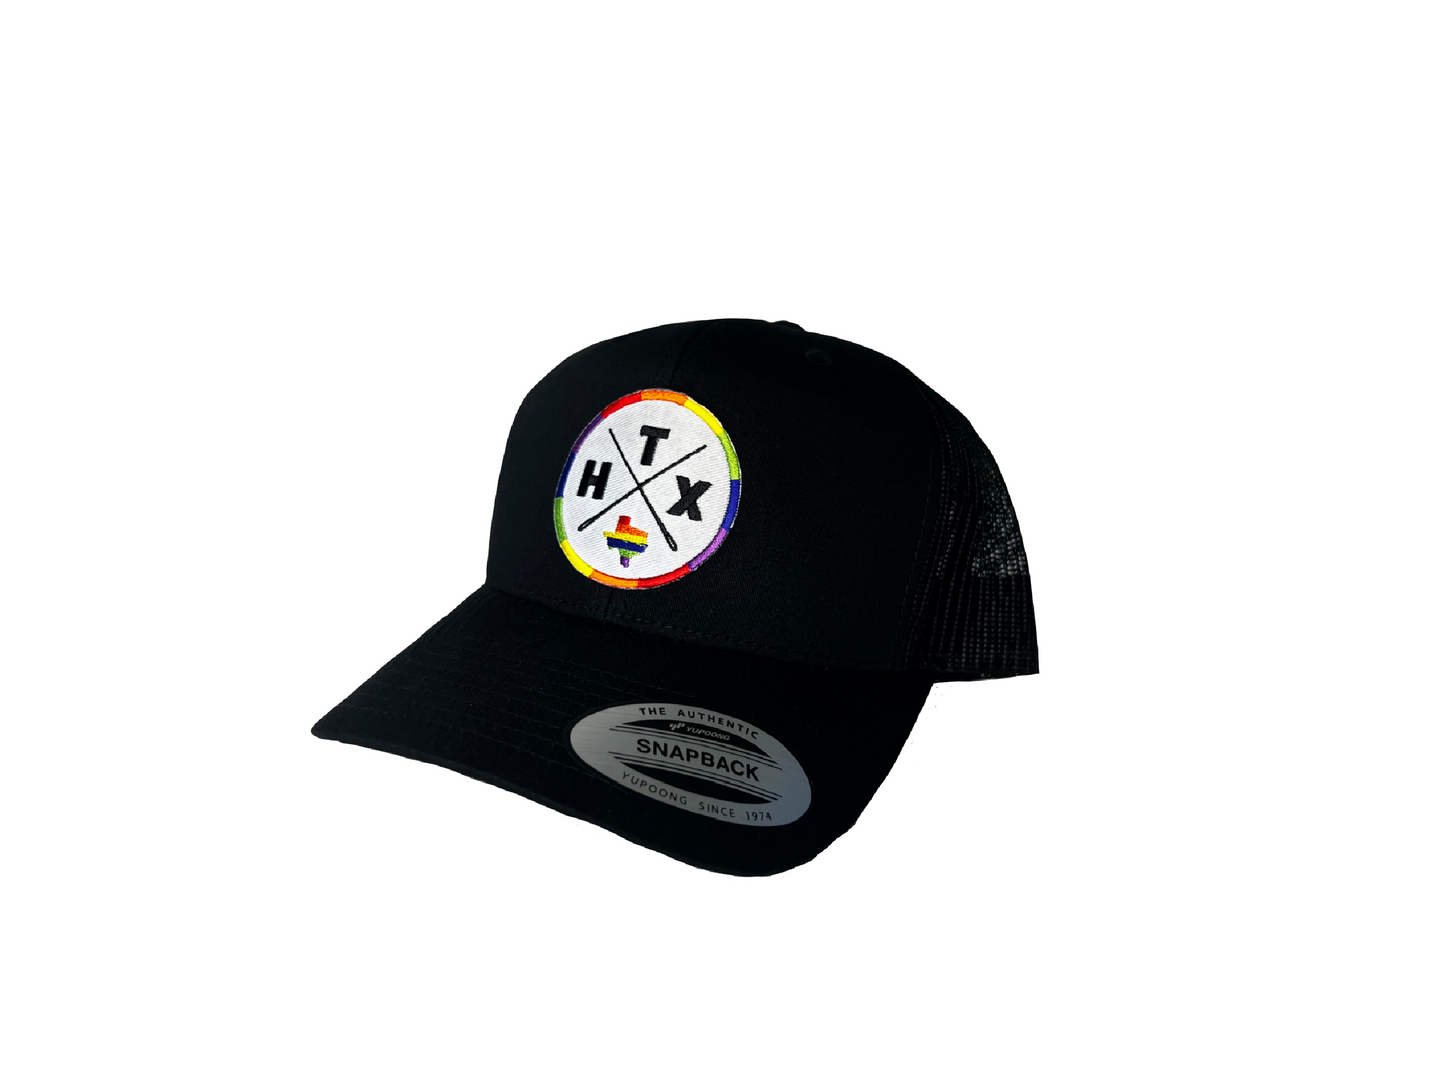 HTX Patch Trucker Hat